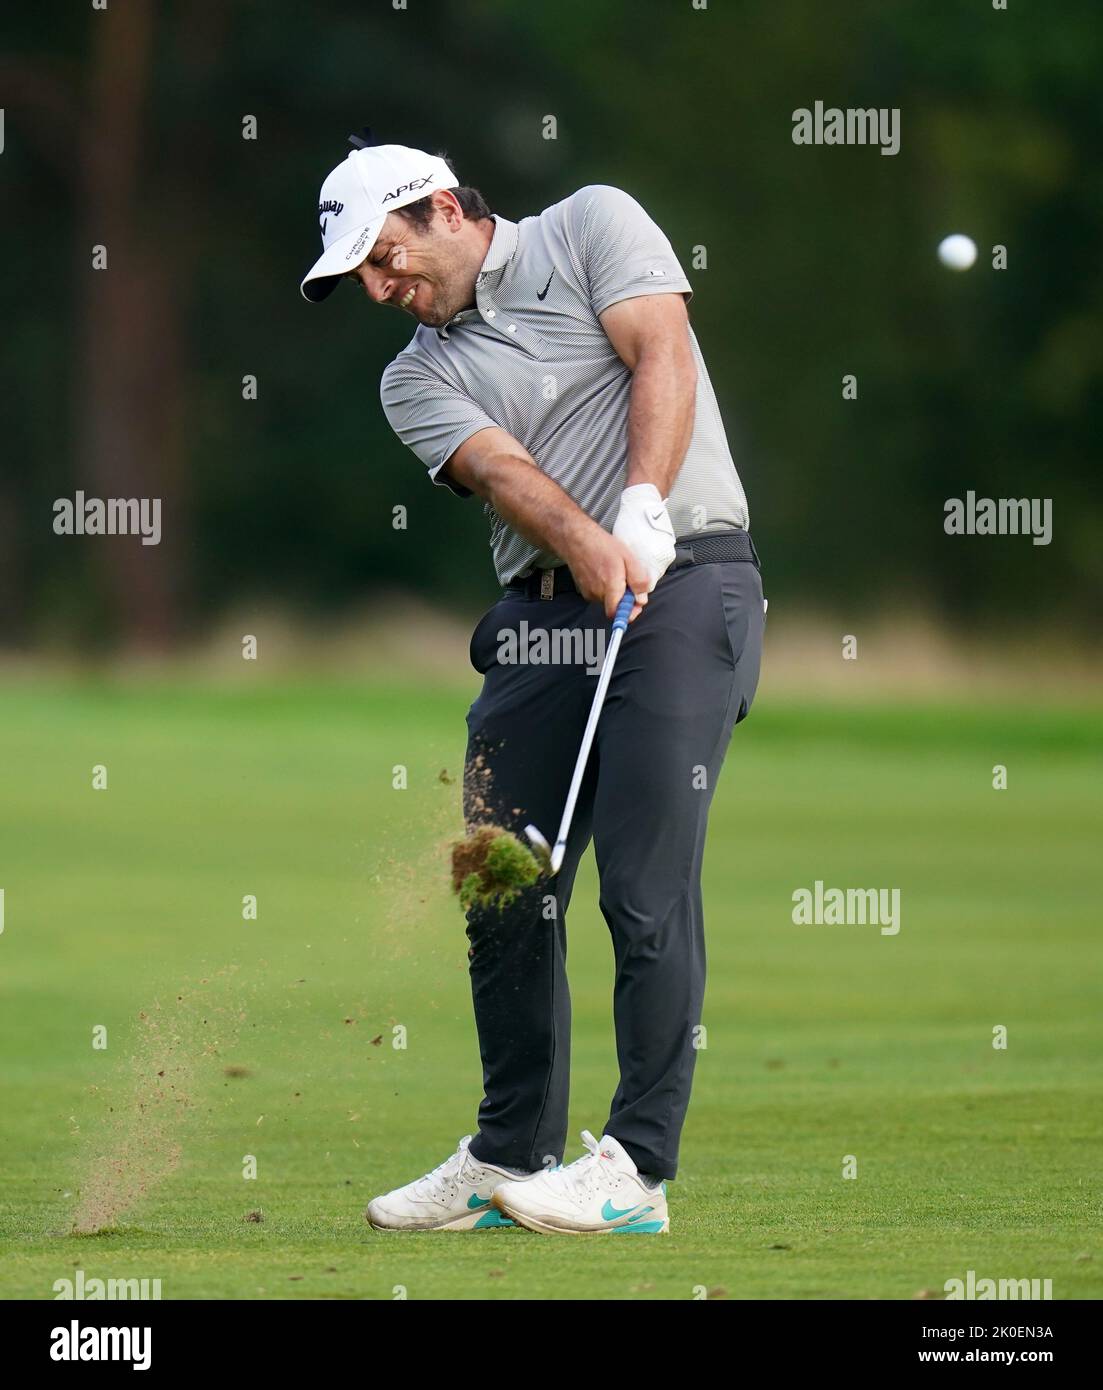 Francesco Molinari während des vierten Tages der BMW PGA Championship im Wentworth Golf Club, Virginia Water. Bilddatum: Sonntag, 11. September 2022. Stockfoto